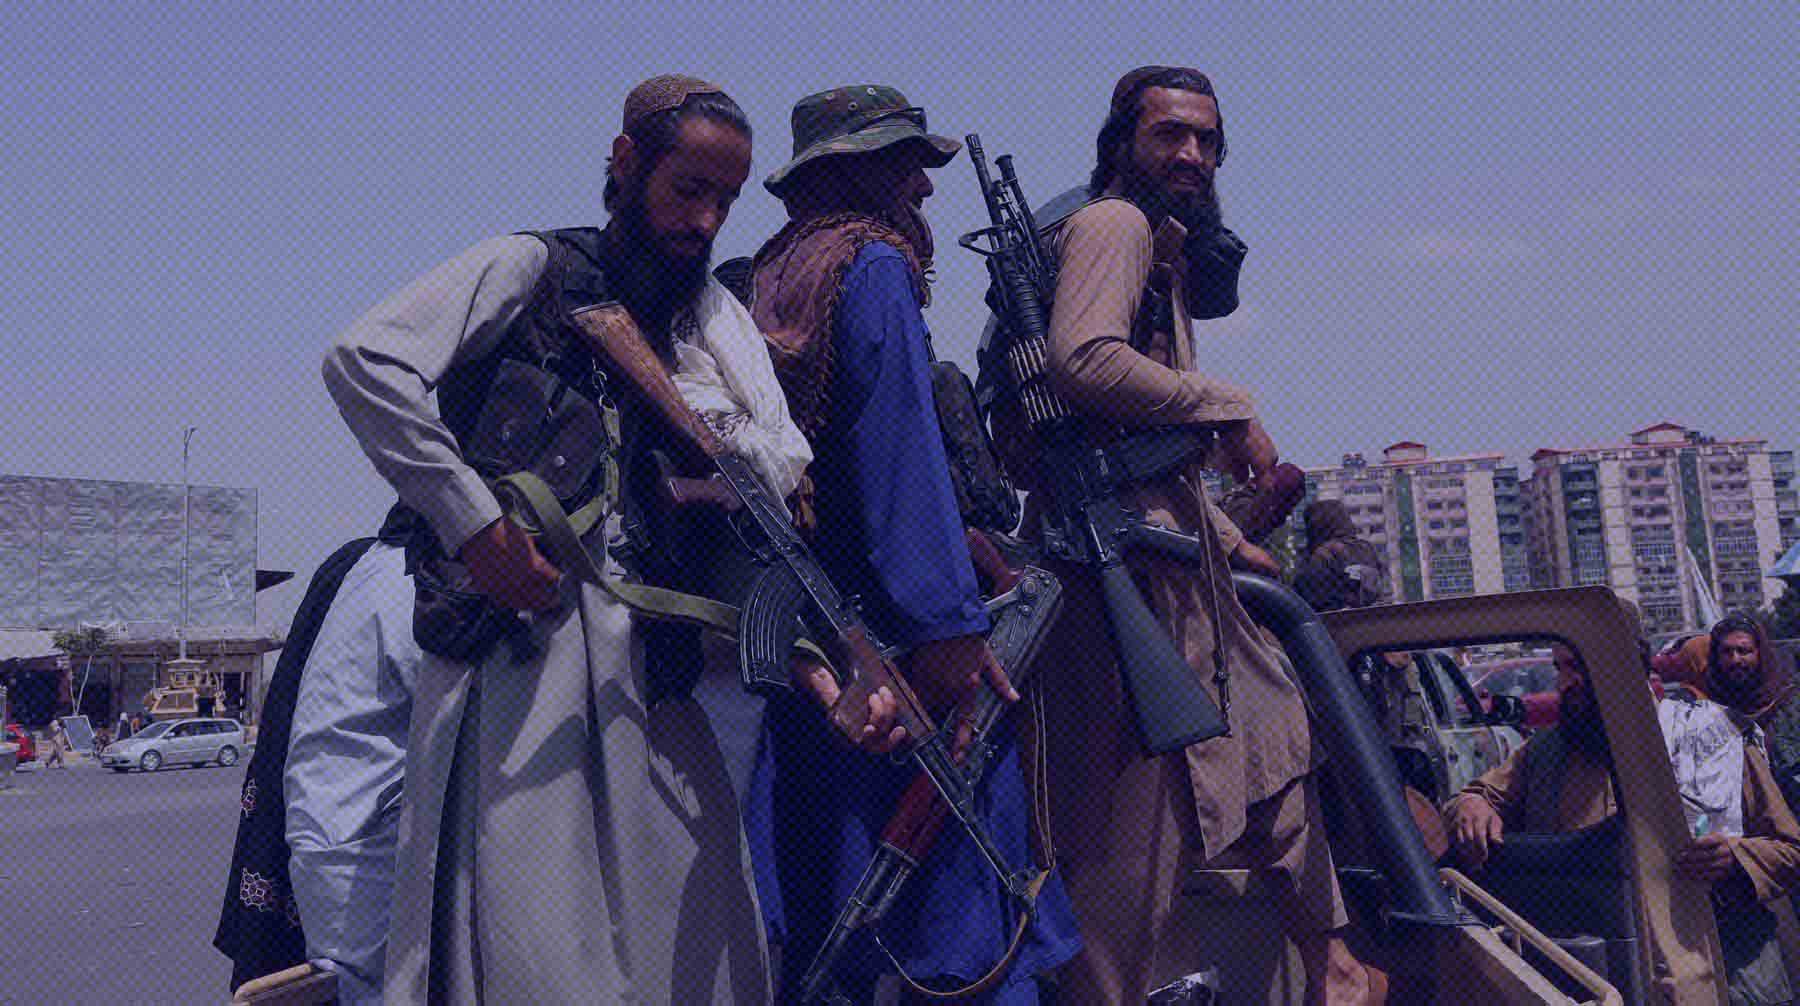 Dailystorm - Афганская дюжина: «Талибан» объявил состав нового правительства